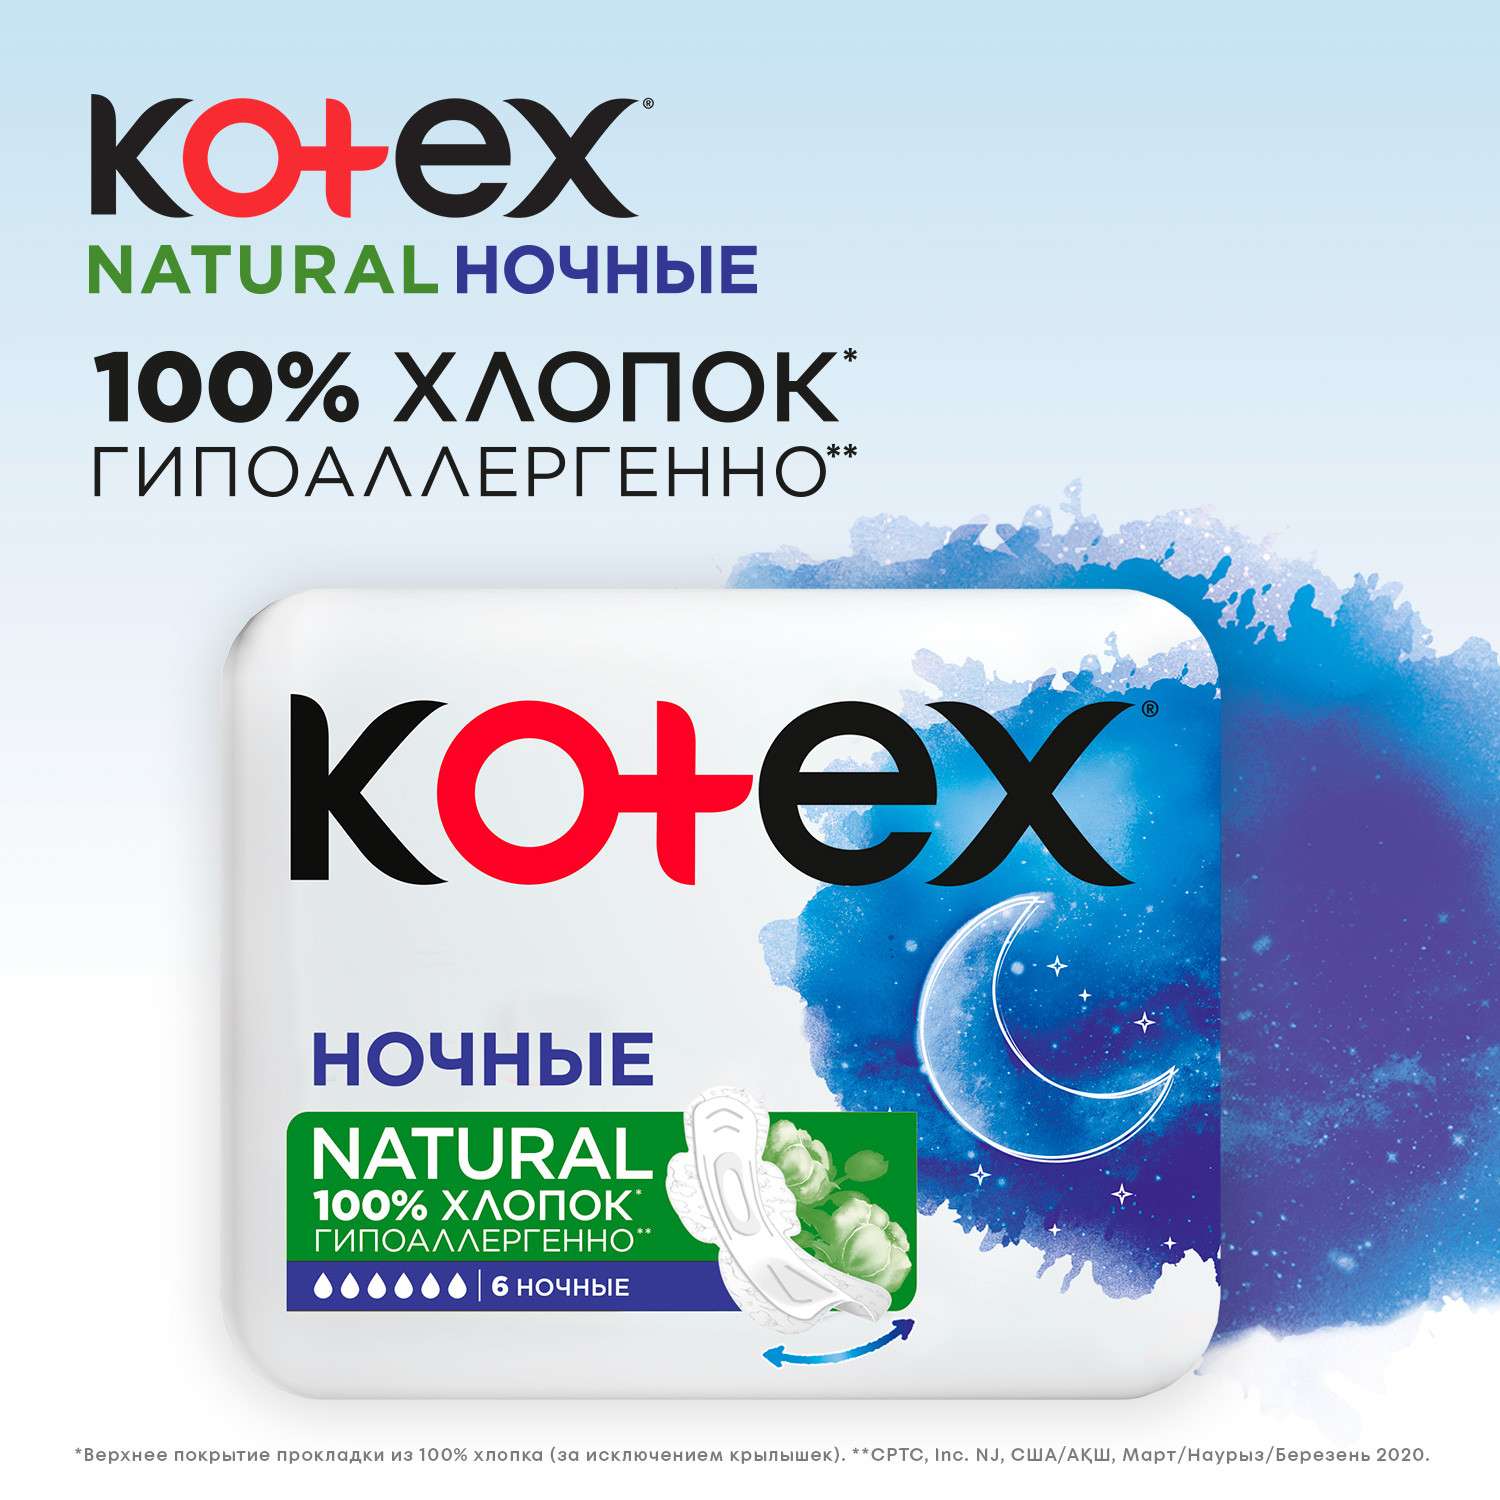 Прокладки KOTEX Natural ночные 12шт - фото 5